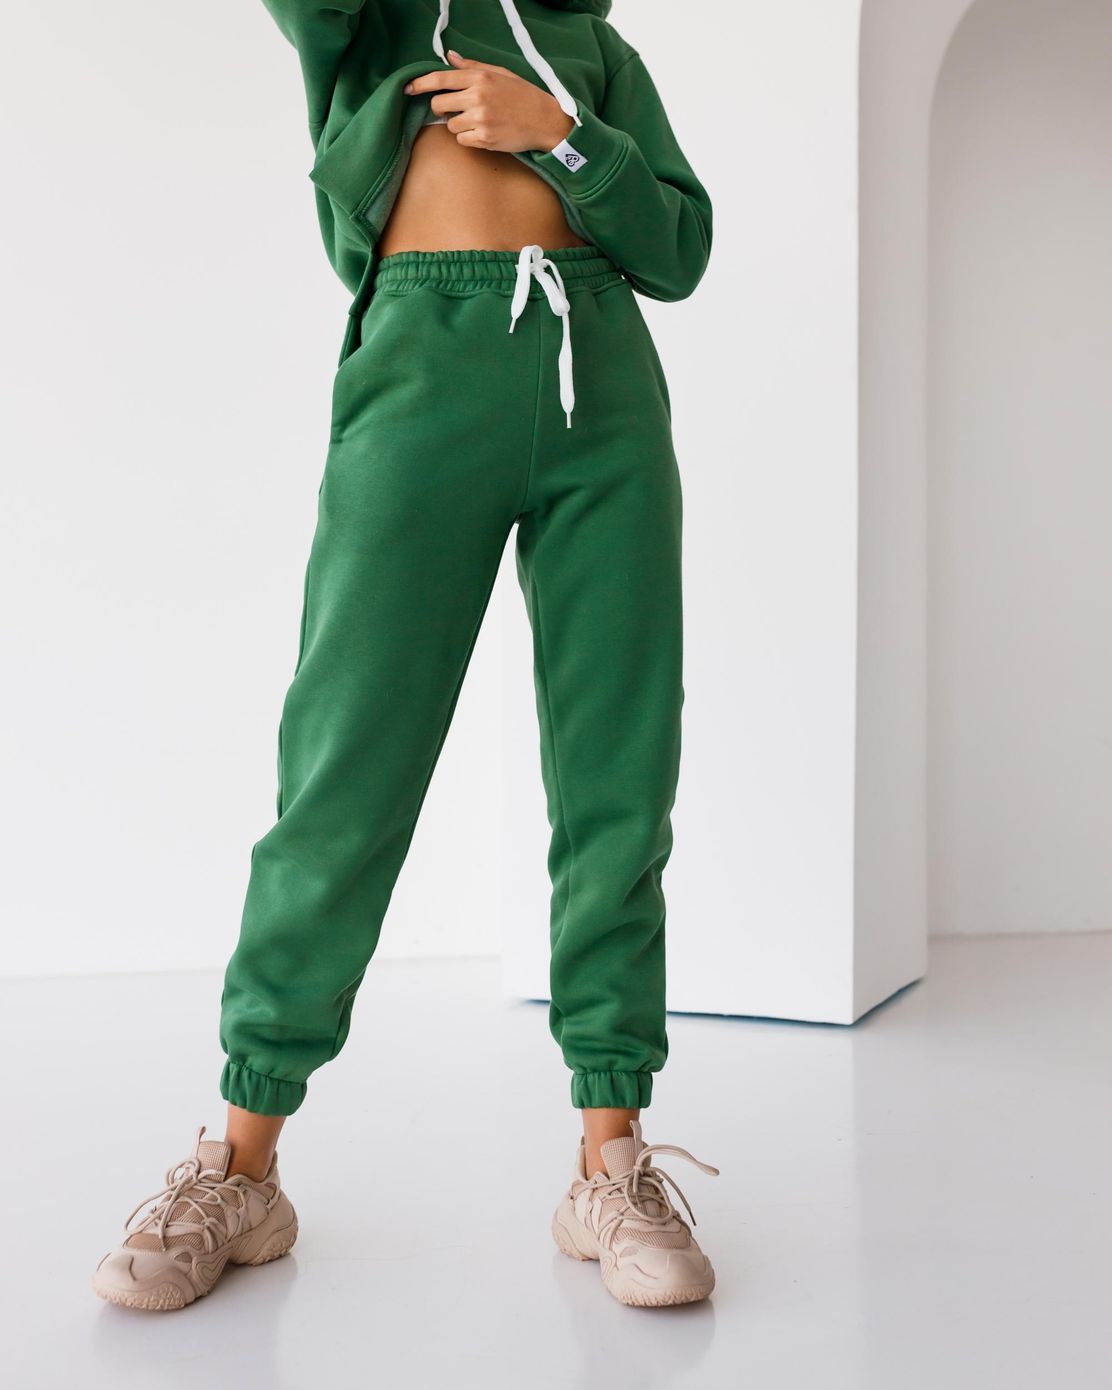 Стильный утепленный костюм на флисе Худи+джогеры зеленый, Зелёный, S-M